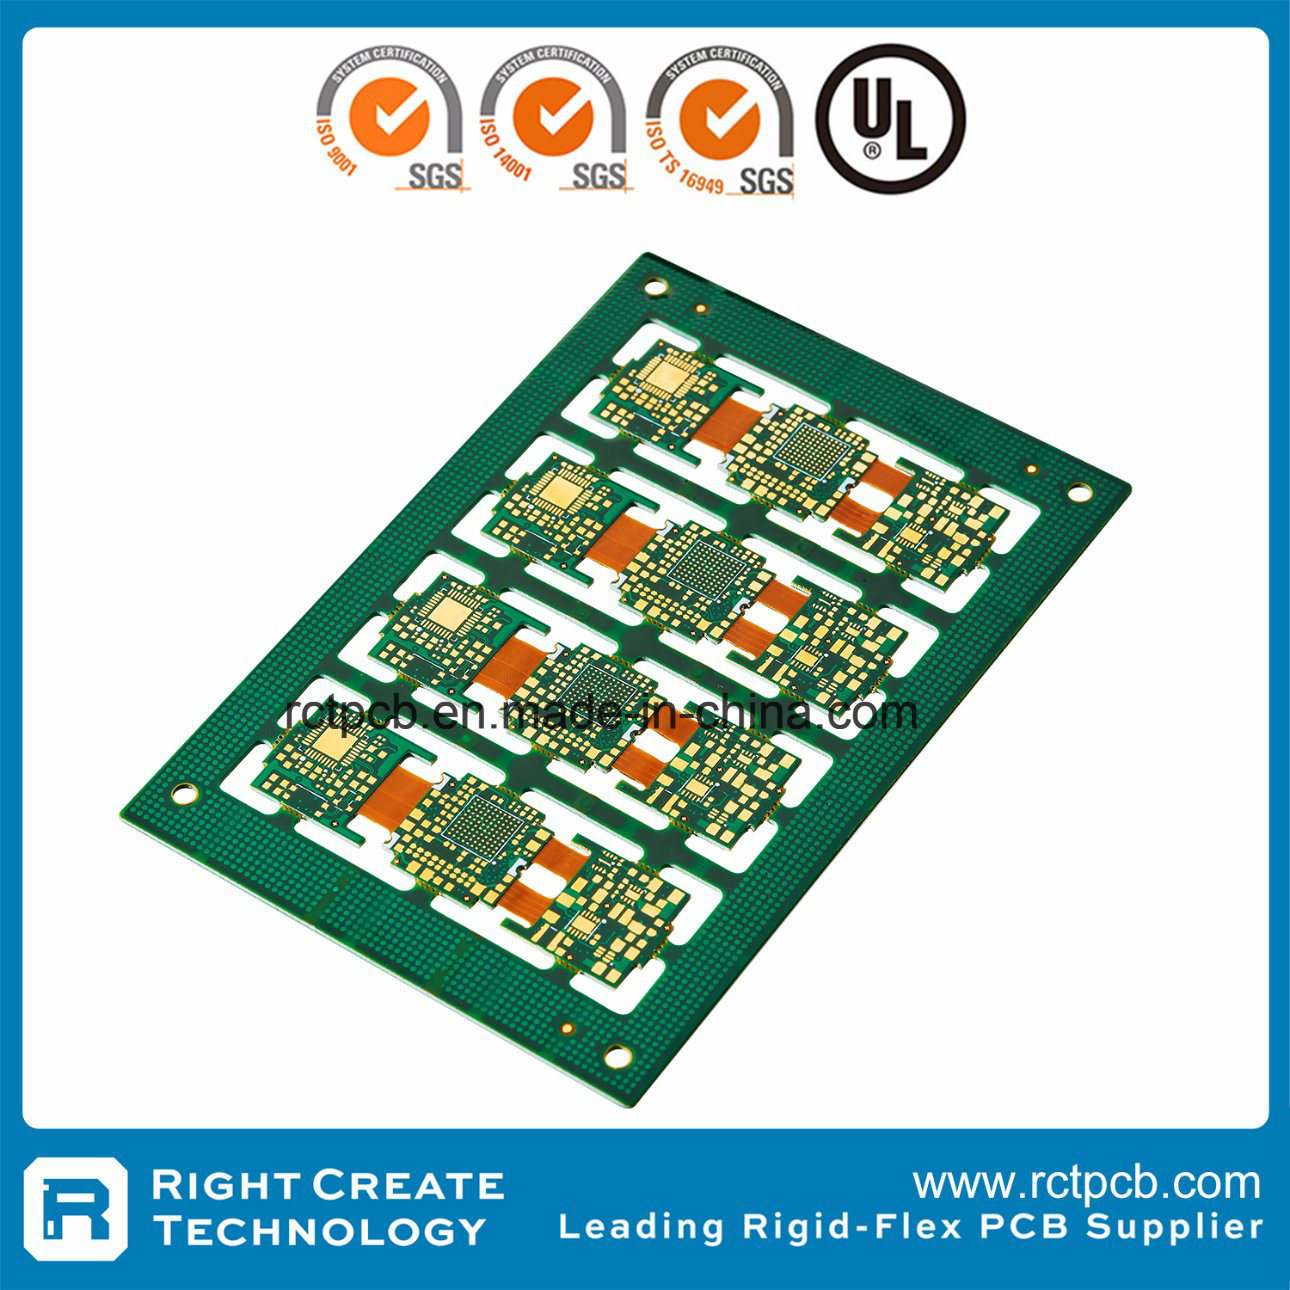 8 Layer HDI Rigid Flex PCB with Enig